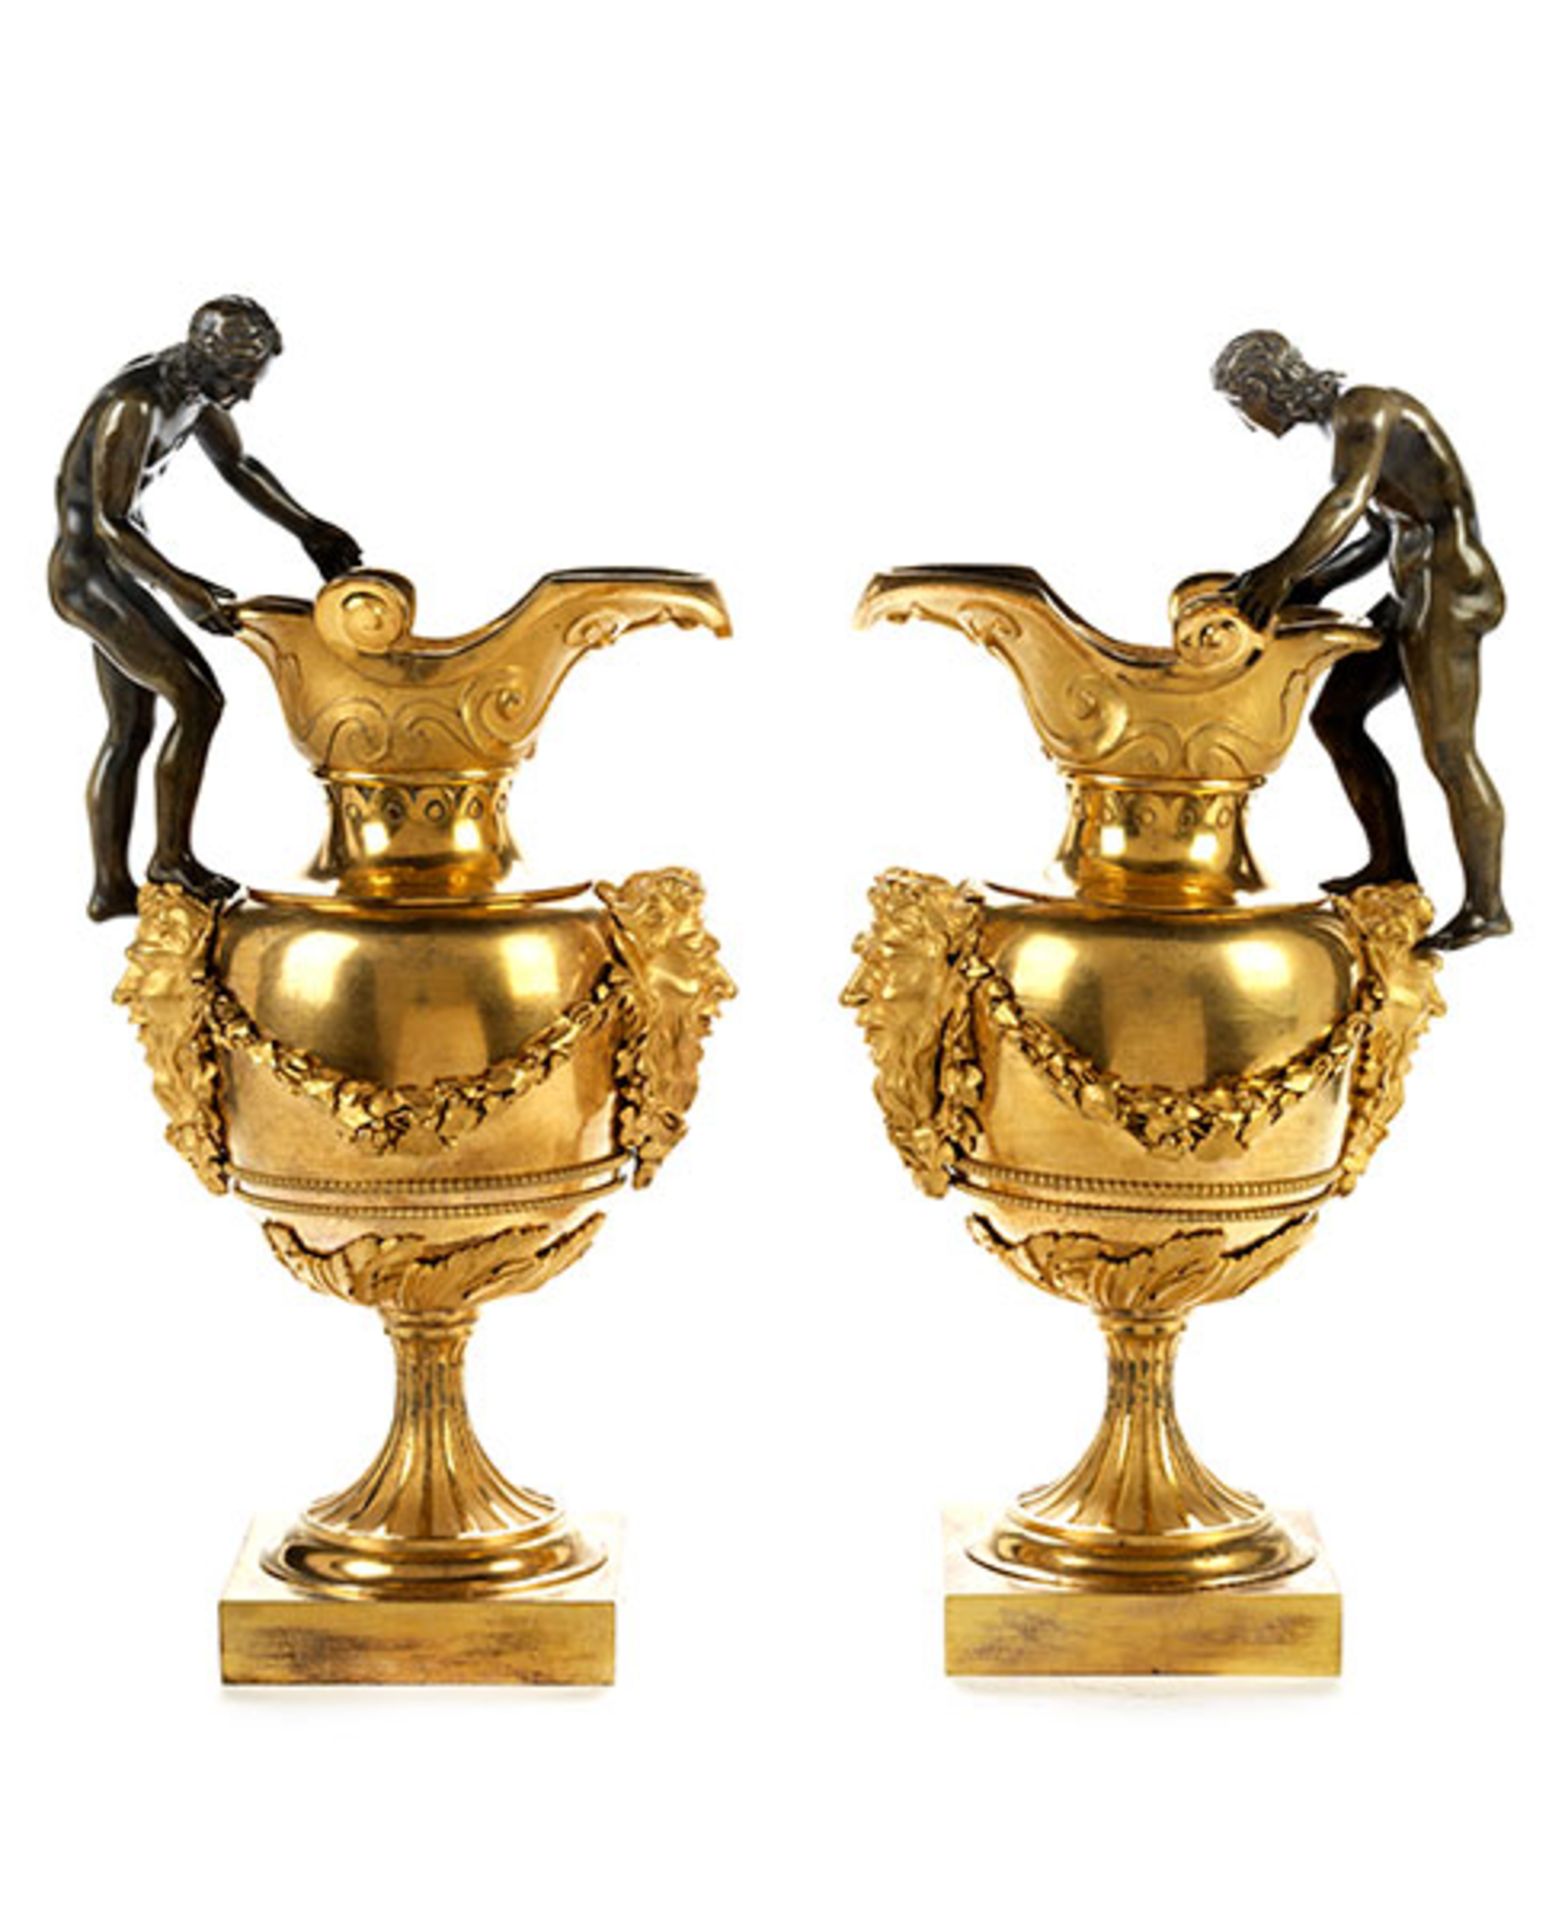 Ein Paar Pariser Schenkkannen Höhe: 33 cm. Basis: 10 x 10 cm. Paris, Ende 18. Jahrhundert. Bronze, - Bild 2 aus 6